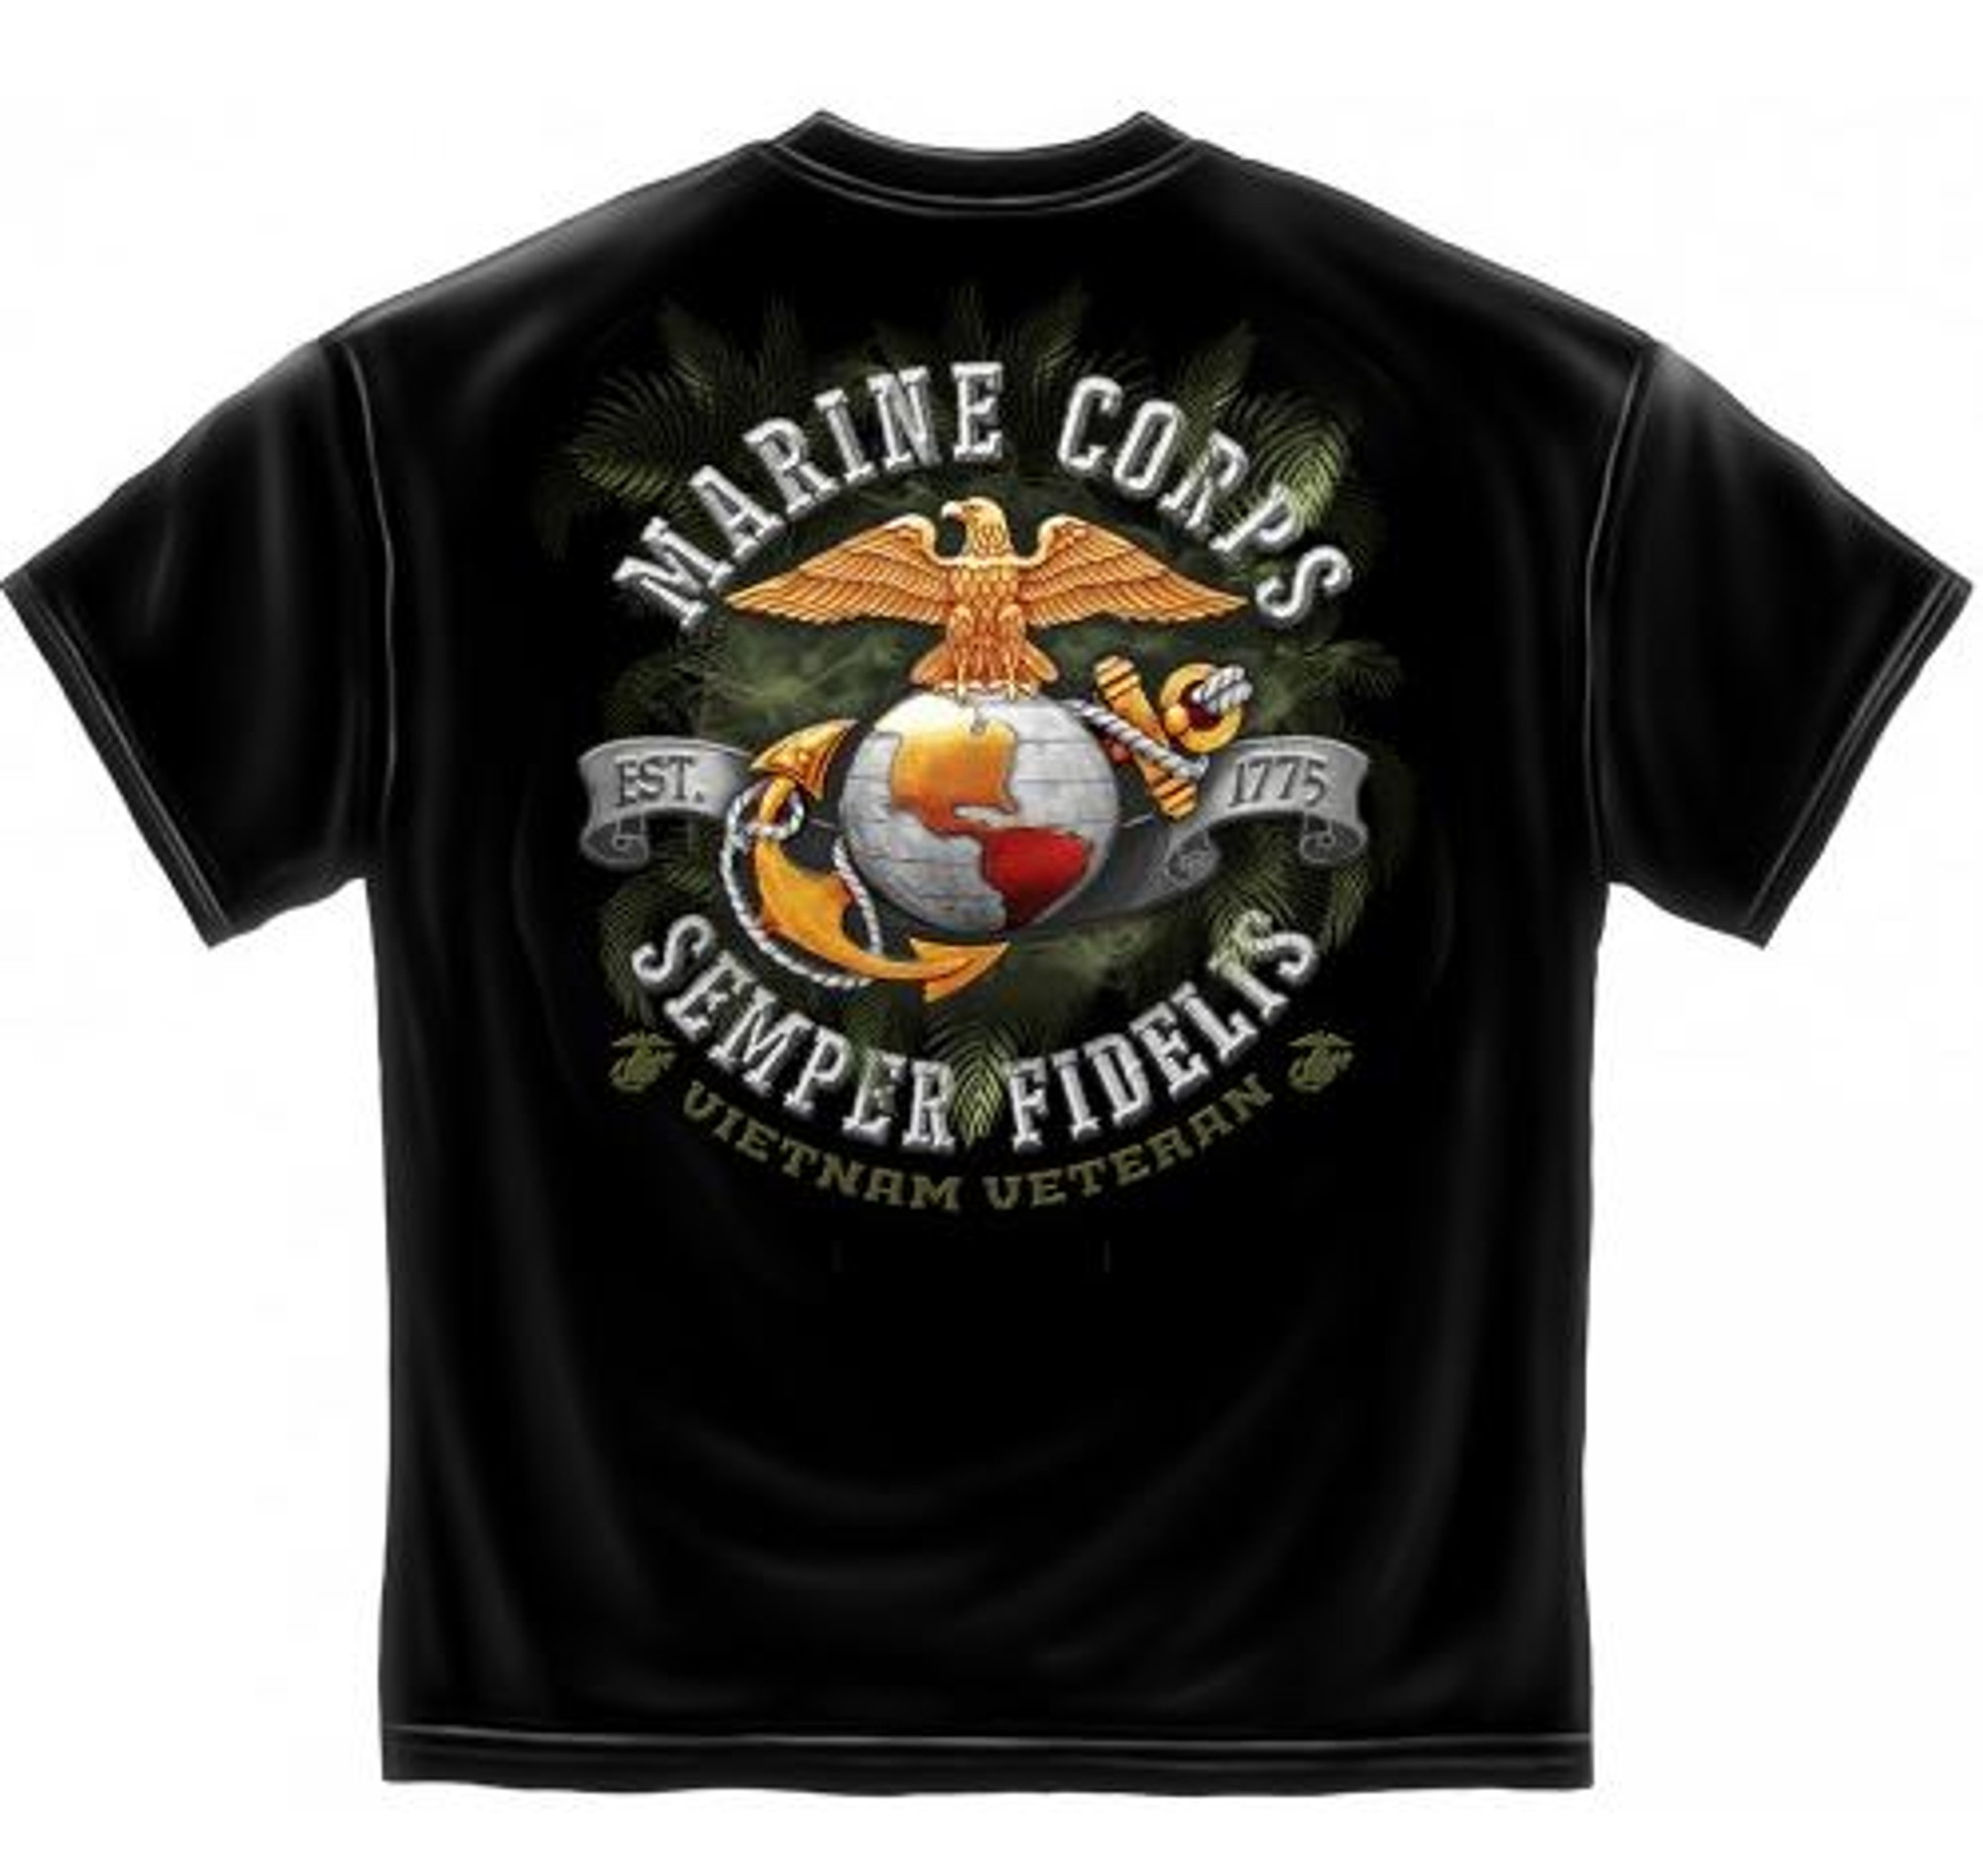 USMC "Vietnam Veteran" T-Shirt